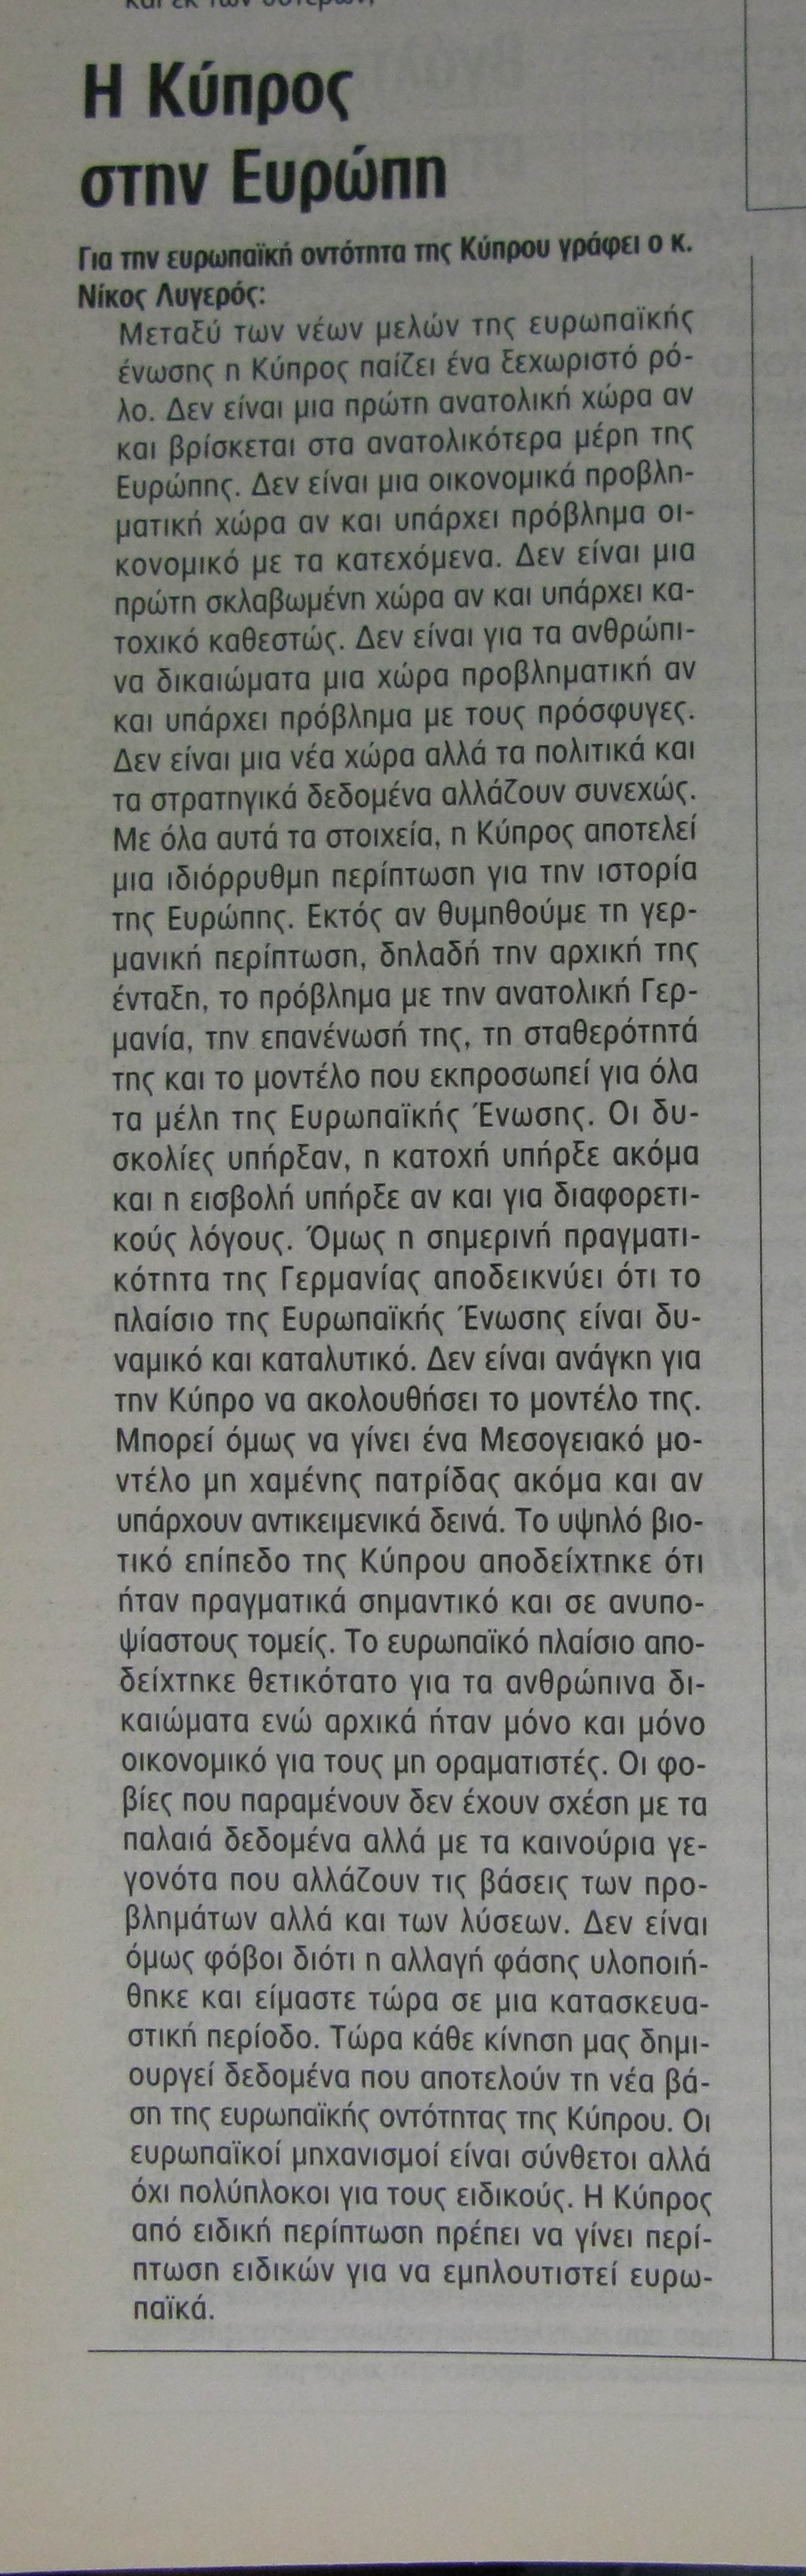 Η Κύπρος στην Ευρώπη. ΠOΛITHΣ 20/05/2004